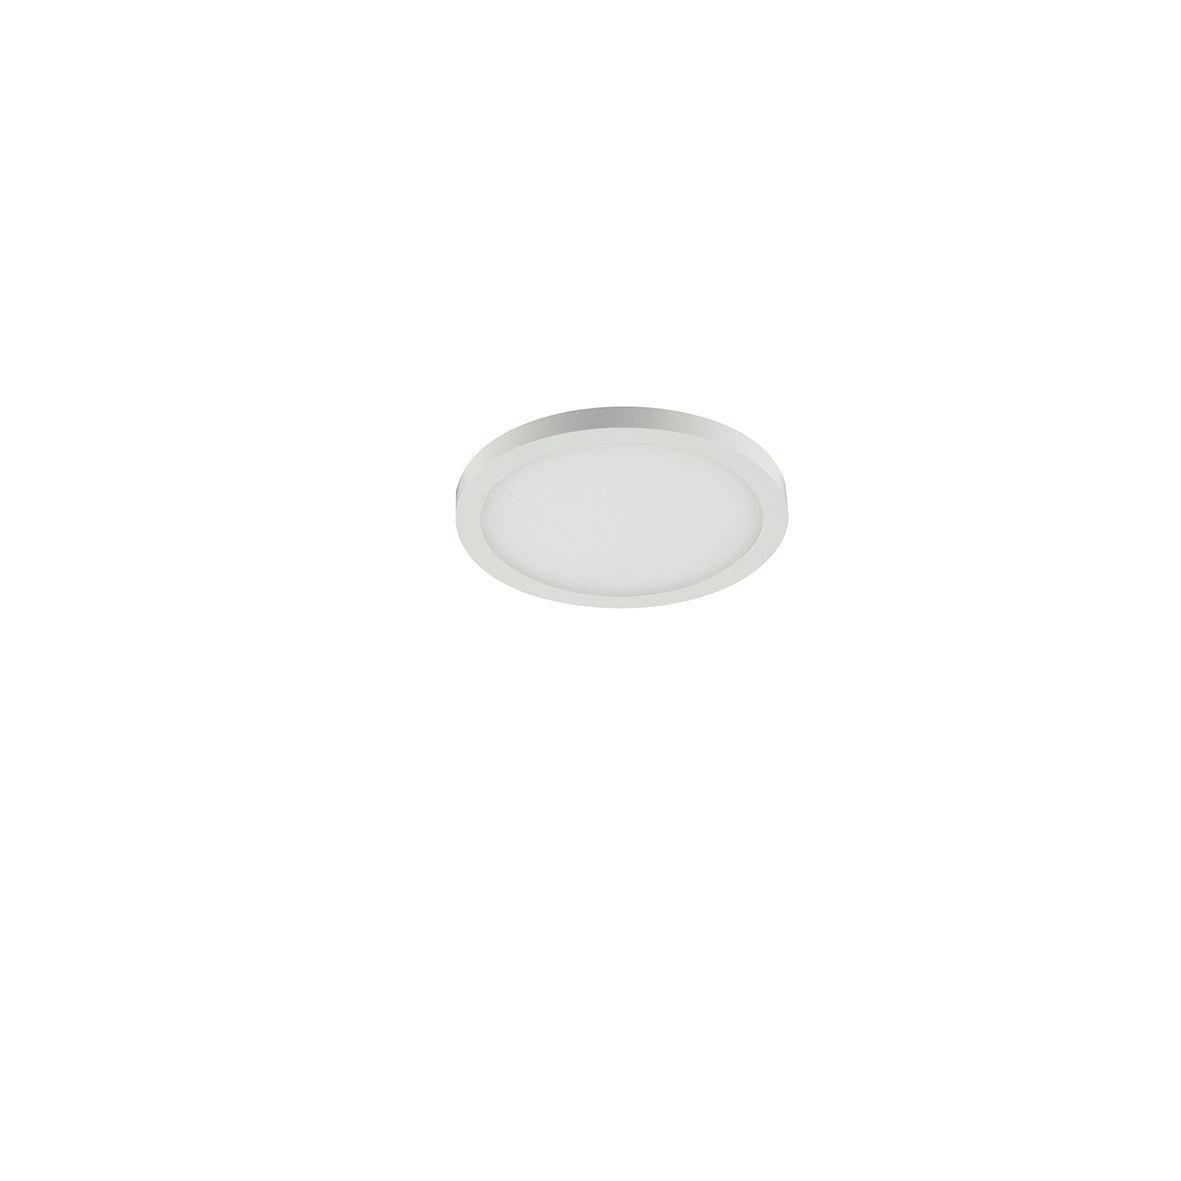 Incasso LED PLUS in alluminio bianco opaco e bordo effetto plafoniera